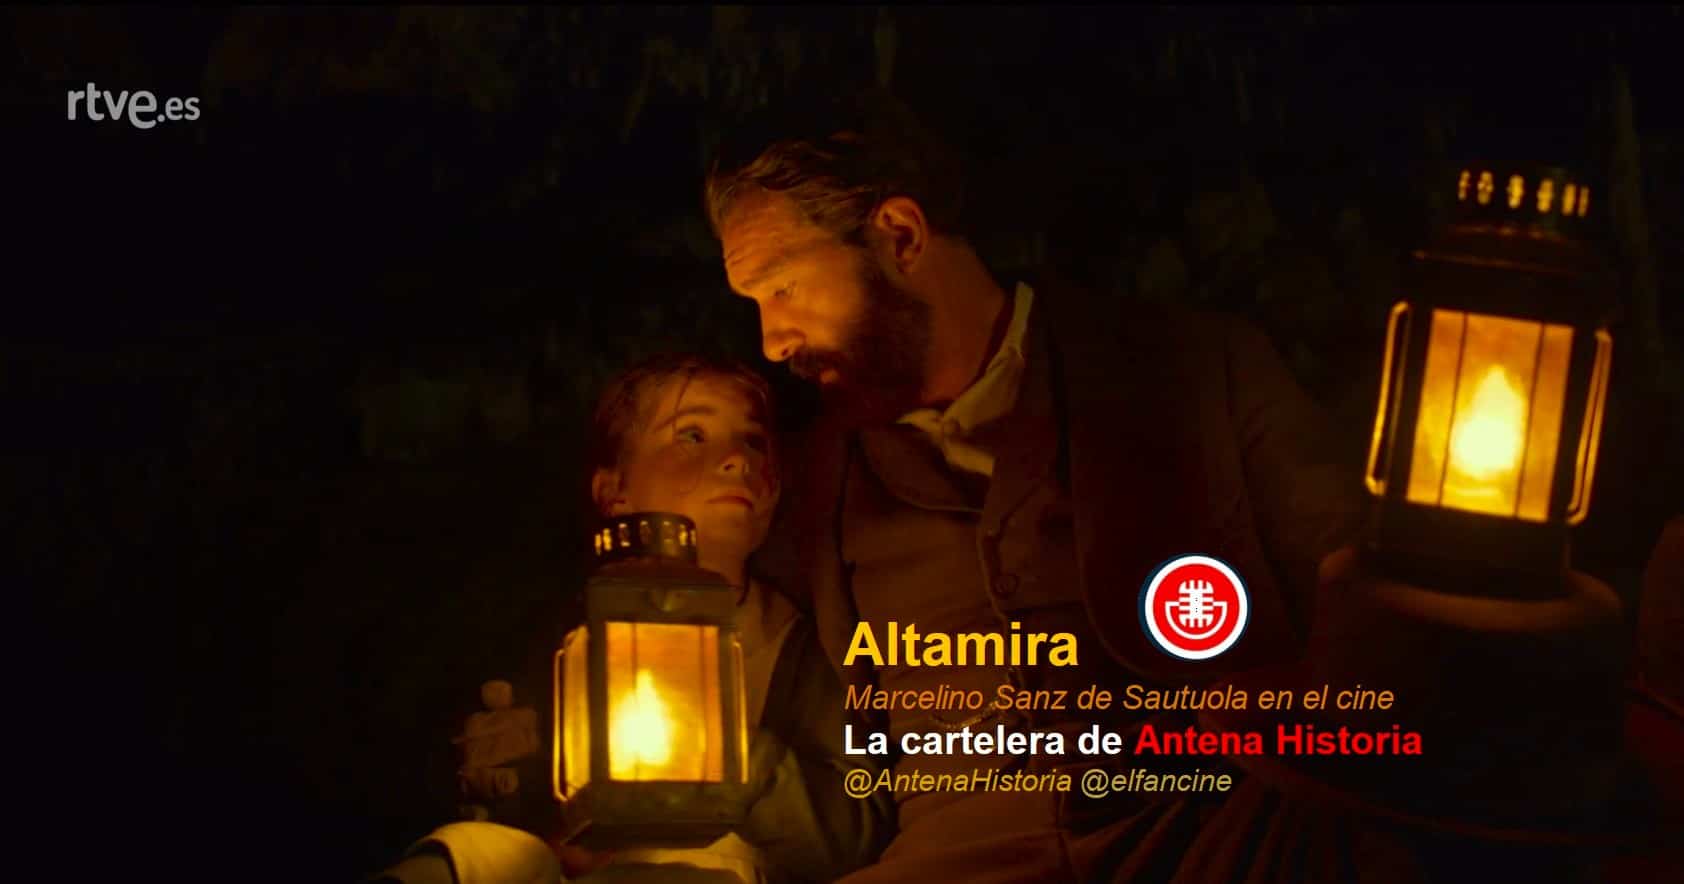 Altamira - Cueva de Altamira - Marcelino Sanz de Sautuola - Cine español - Antonio Banderas - el fancine - Antena Historia - Podcast de cine - Paleolitico - Alvaro Garcia